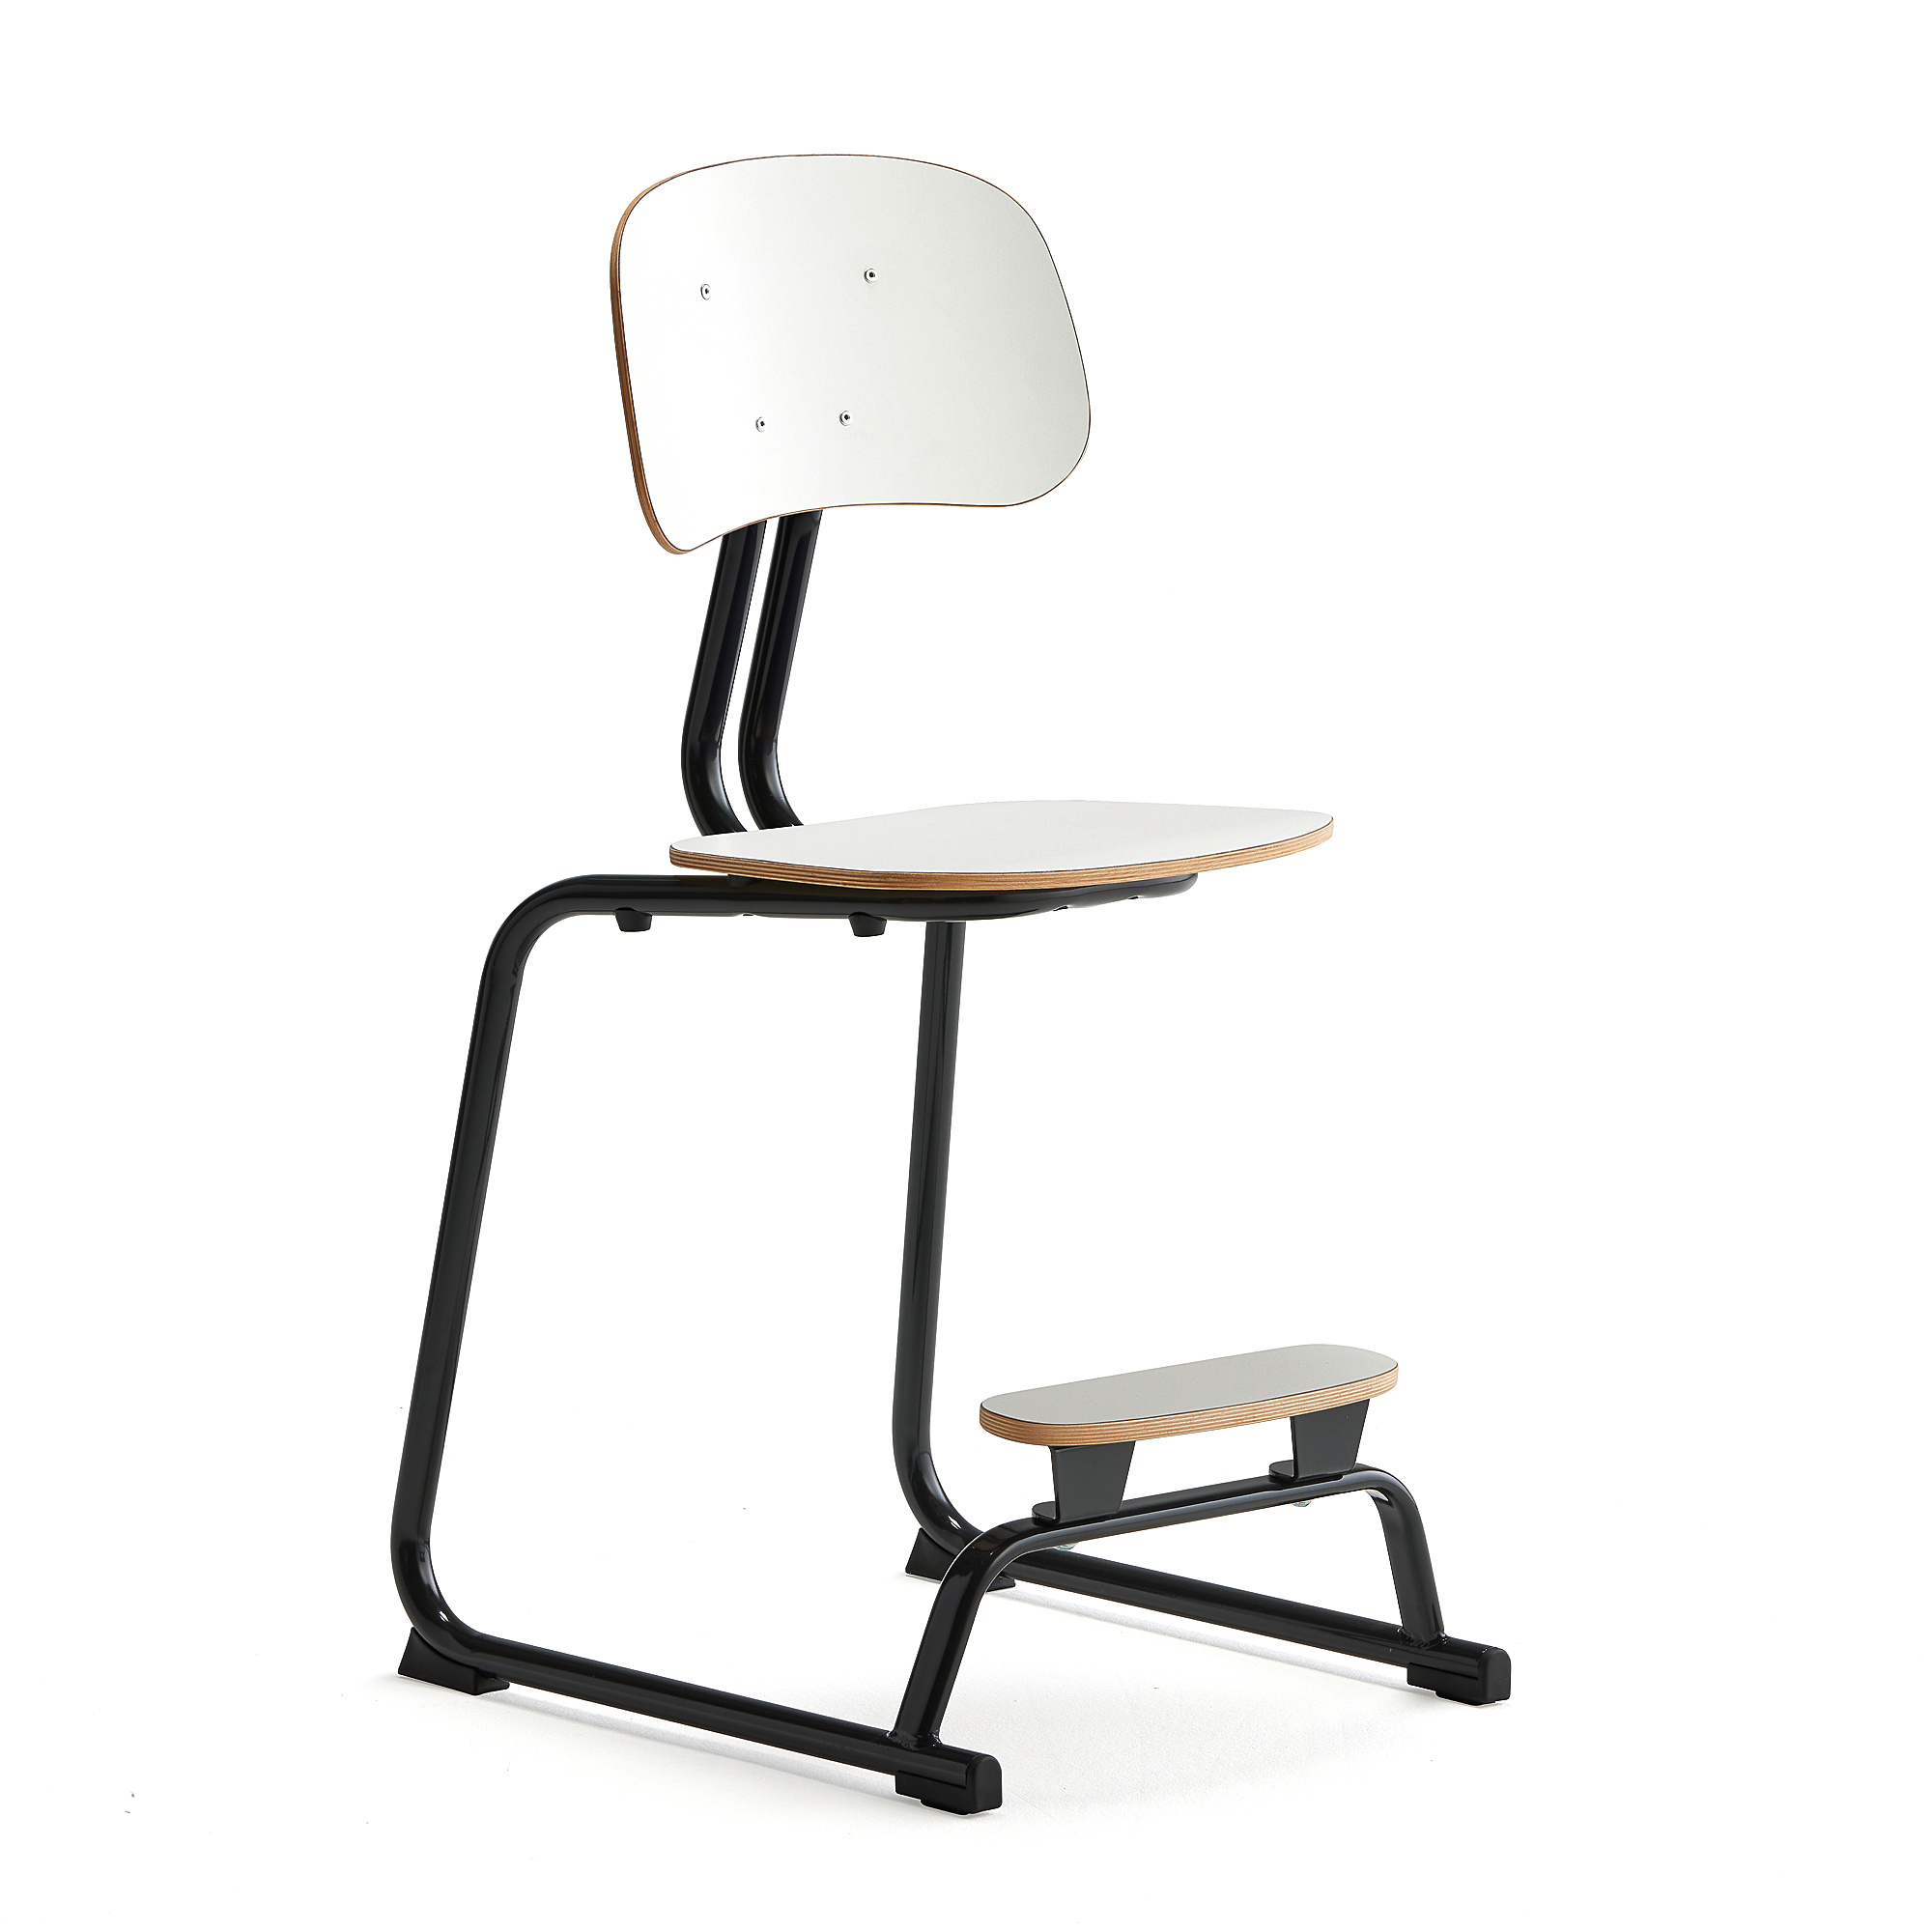 Školní židle YNGVE, ližinová podnož, výška 520 mm, antracitově šedá/bílá